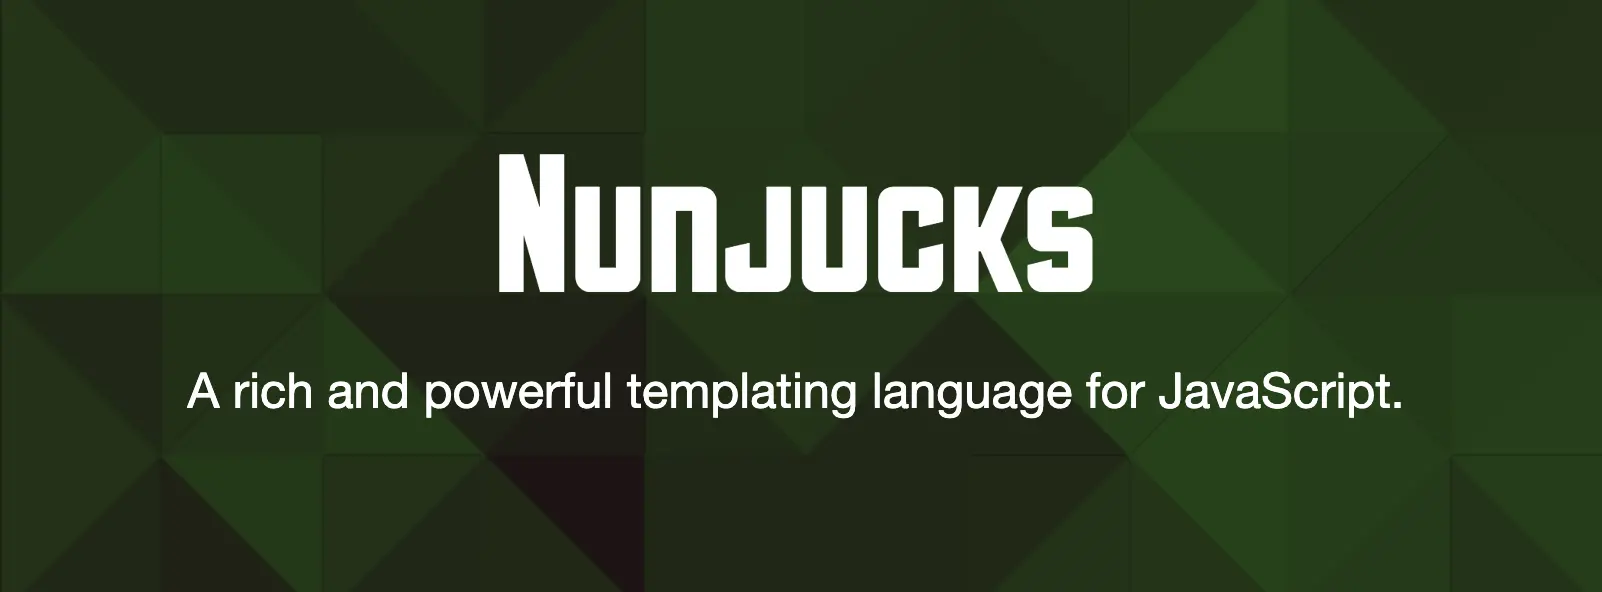 nunjucks.jpg